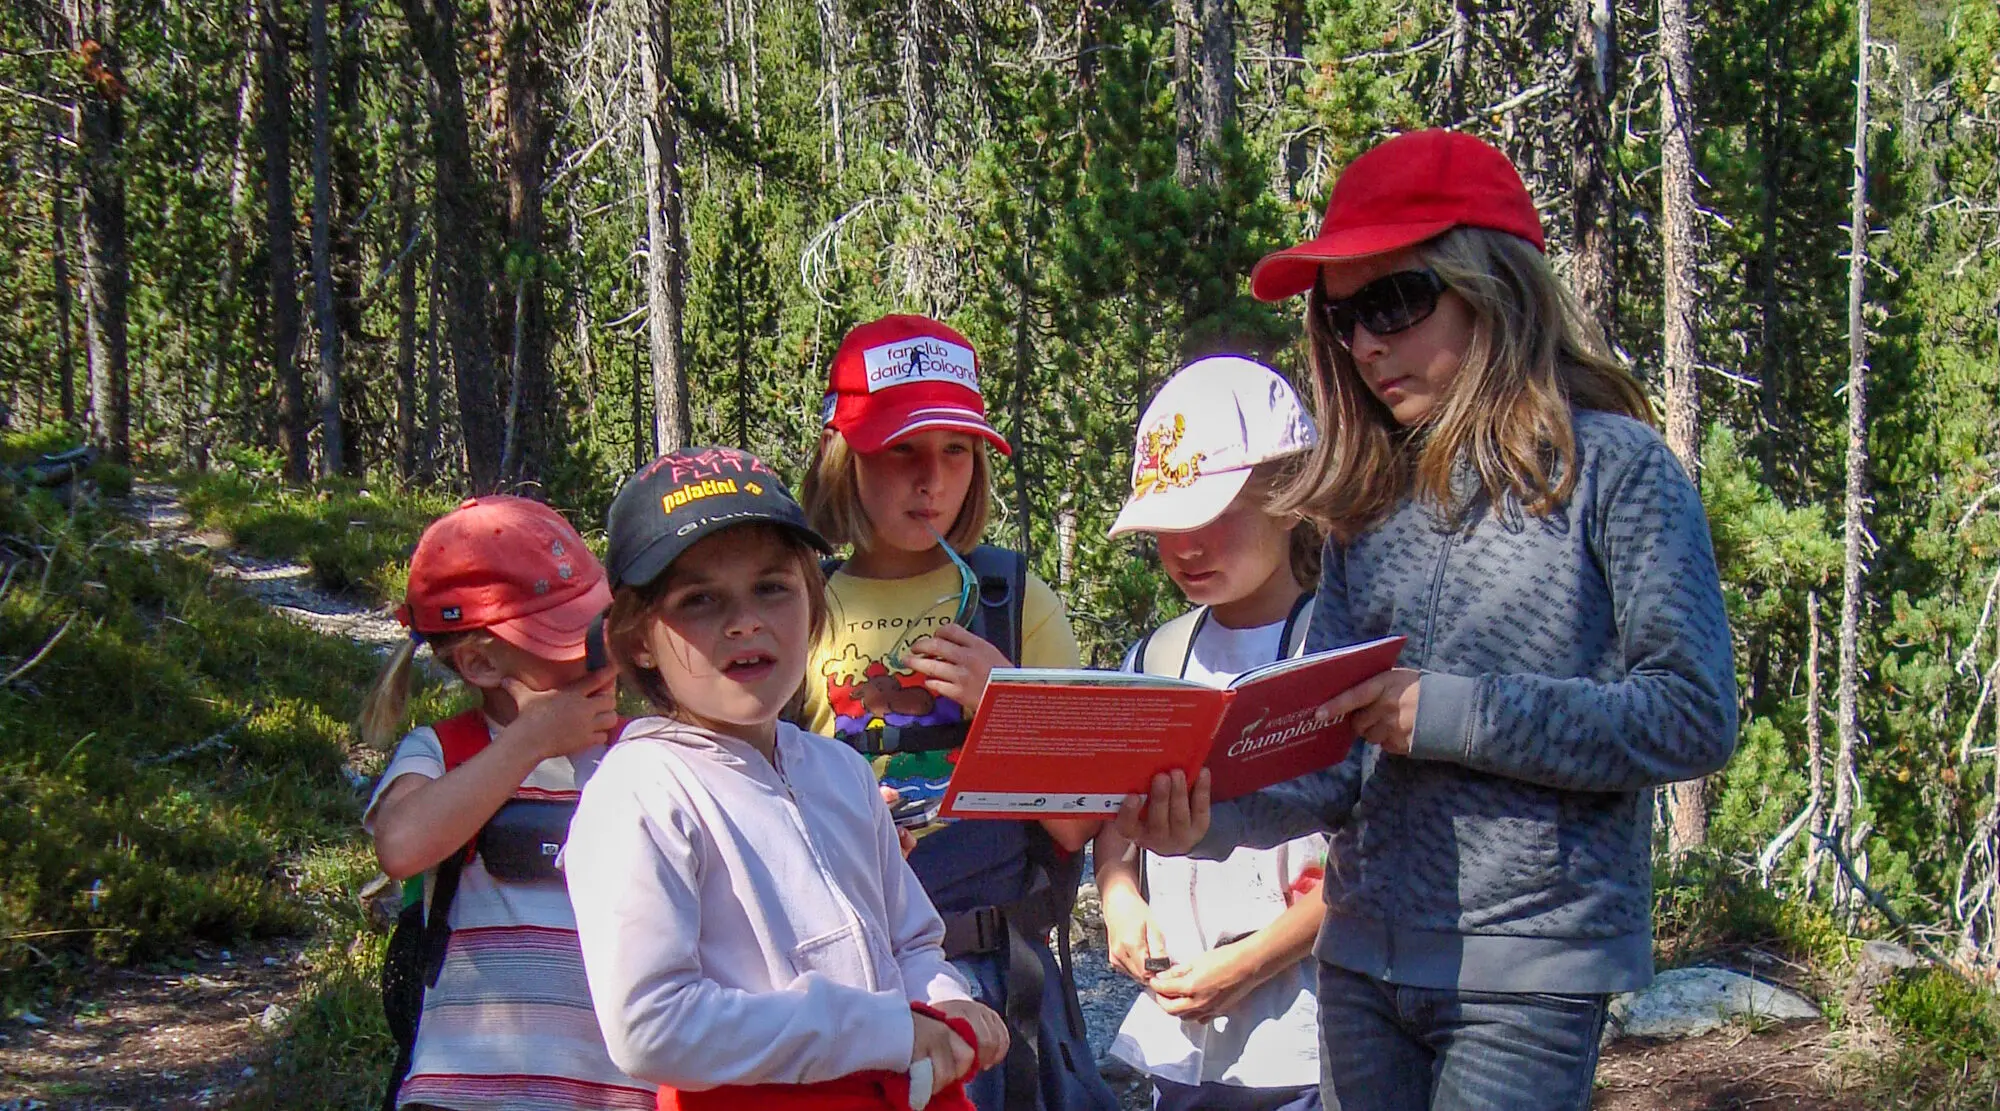 Kindergruppe studiert im Wald das Bilderbuch "Champlönch"